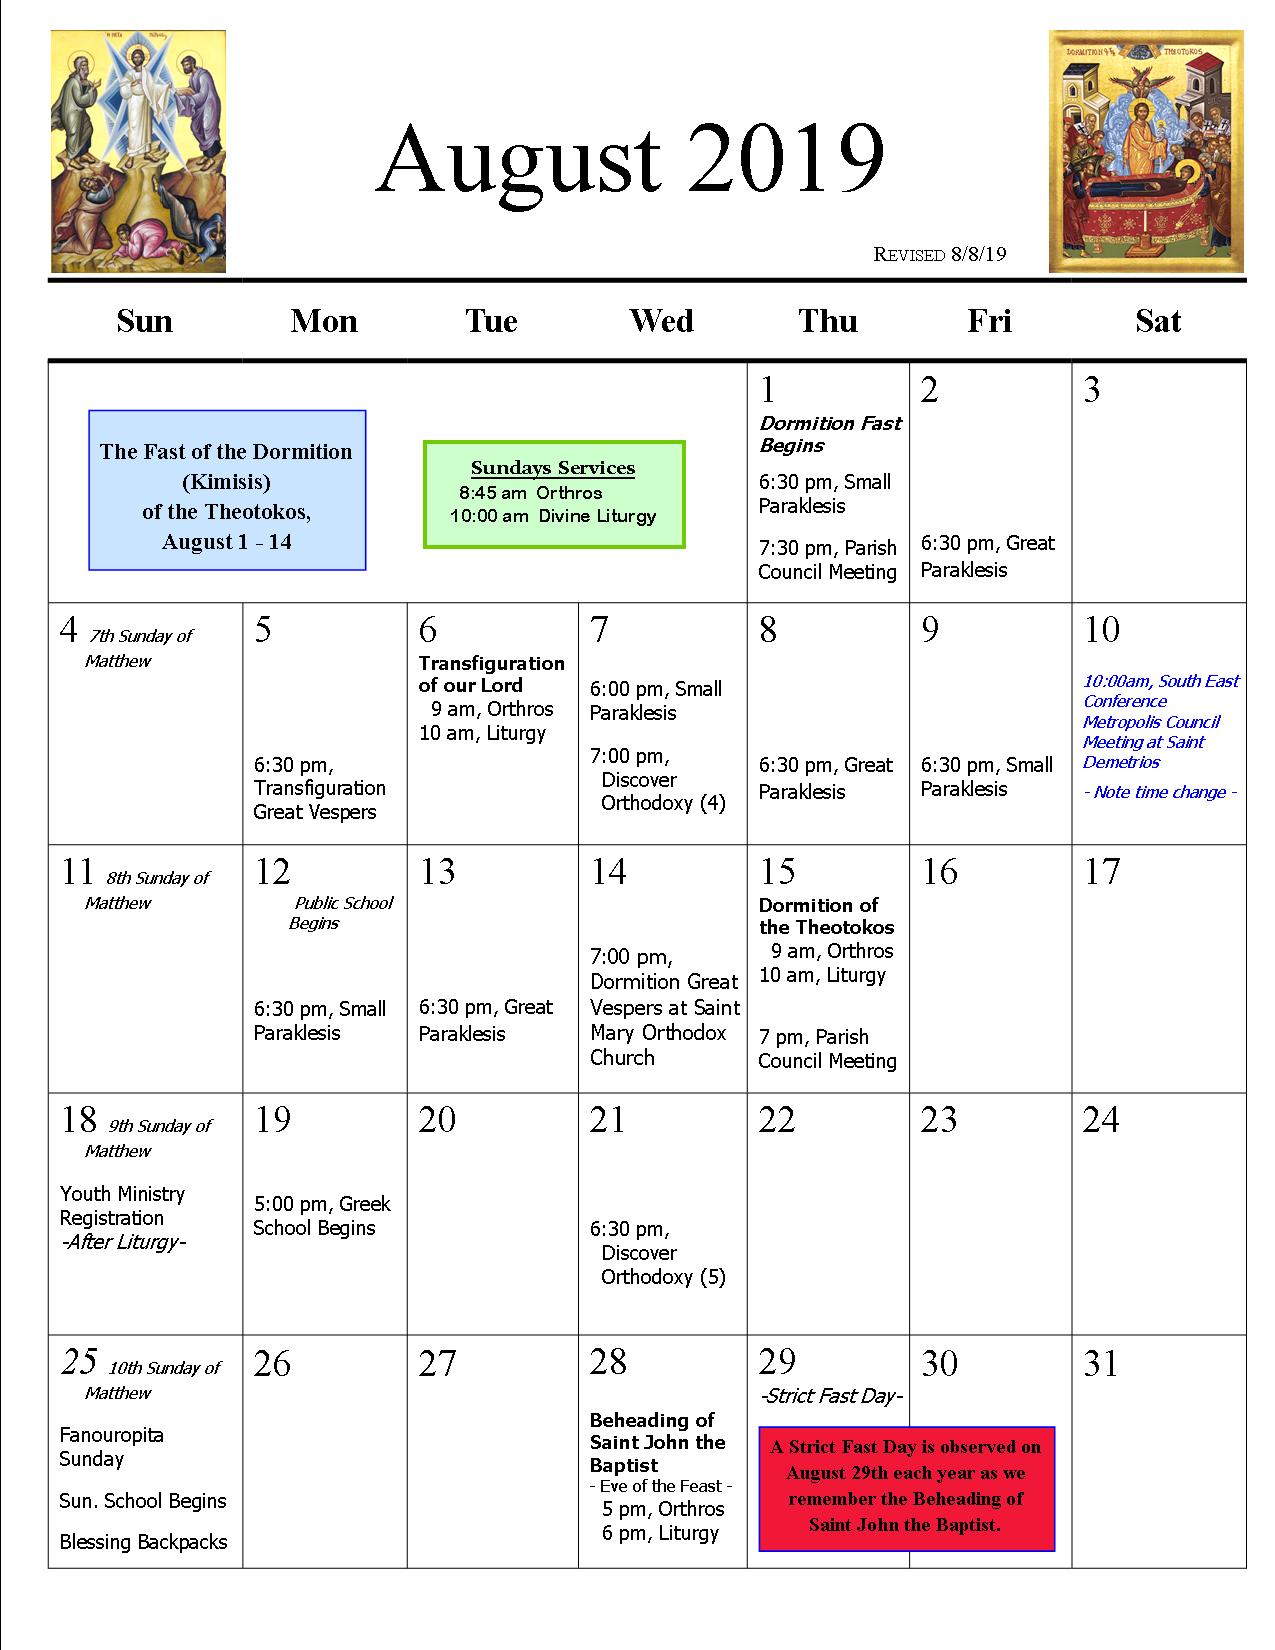 Aug 2019 Calendar revision 2